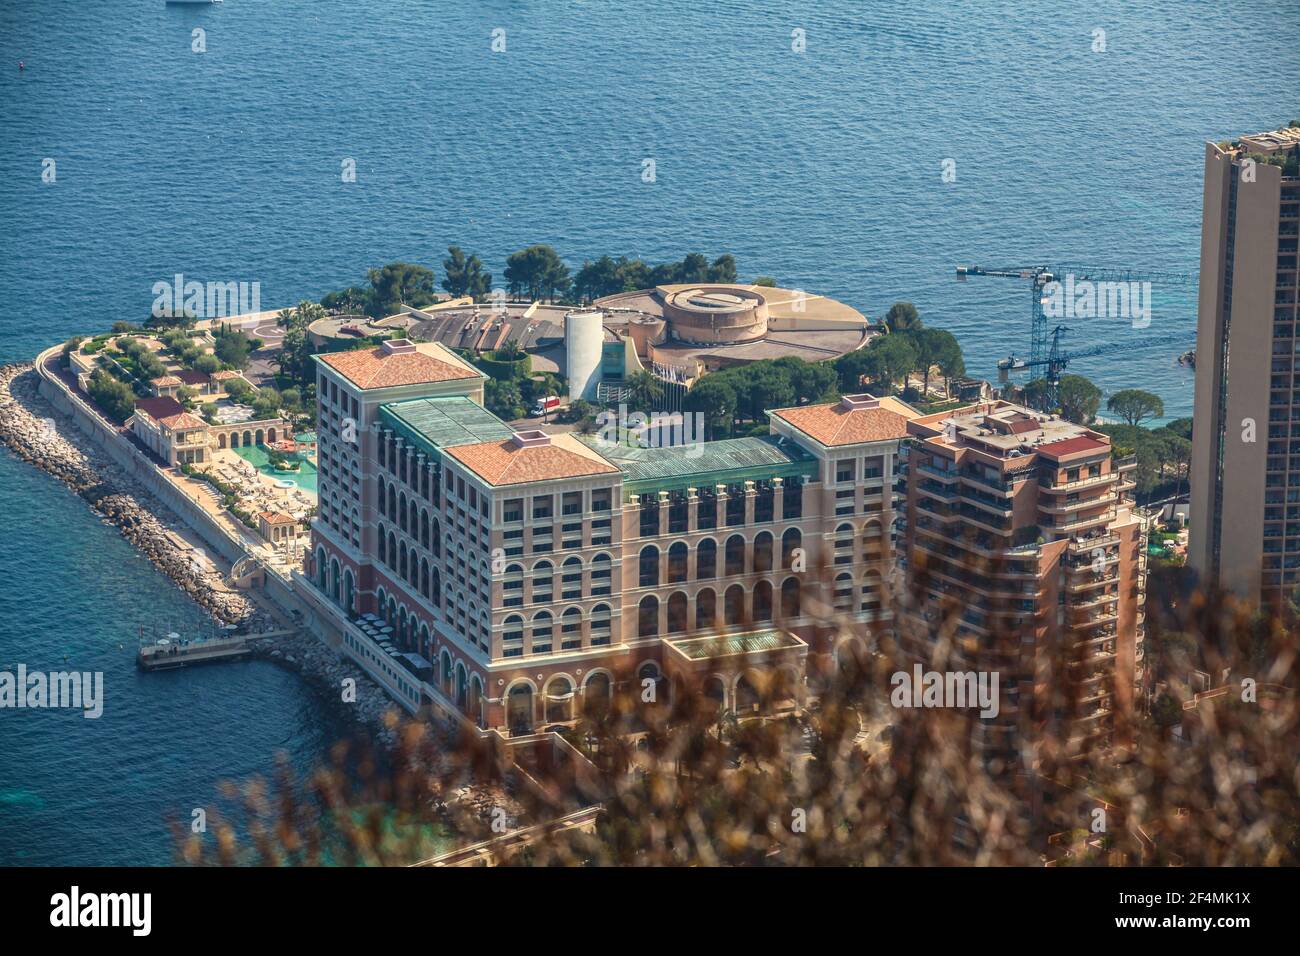 Monte Carlo Bay Hotel in Monaco Stock Photo